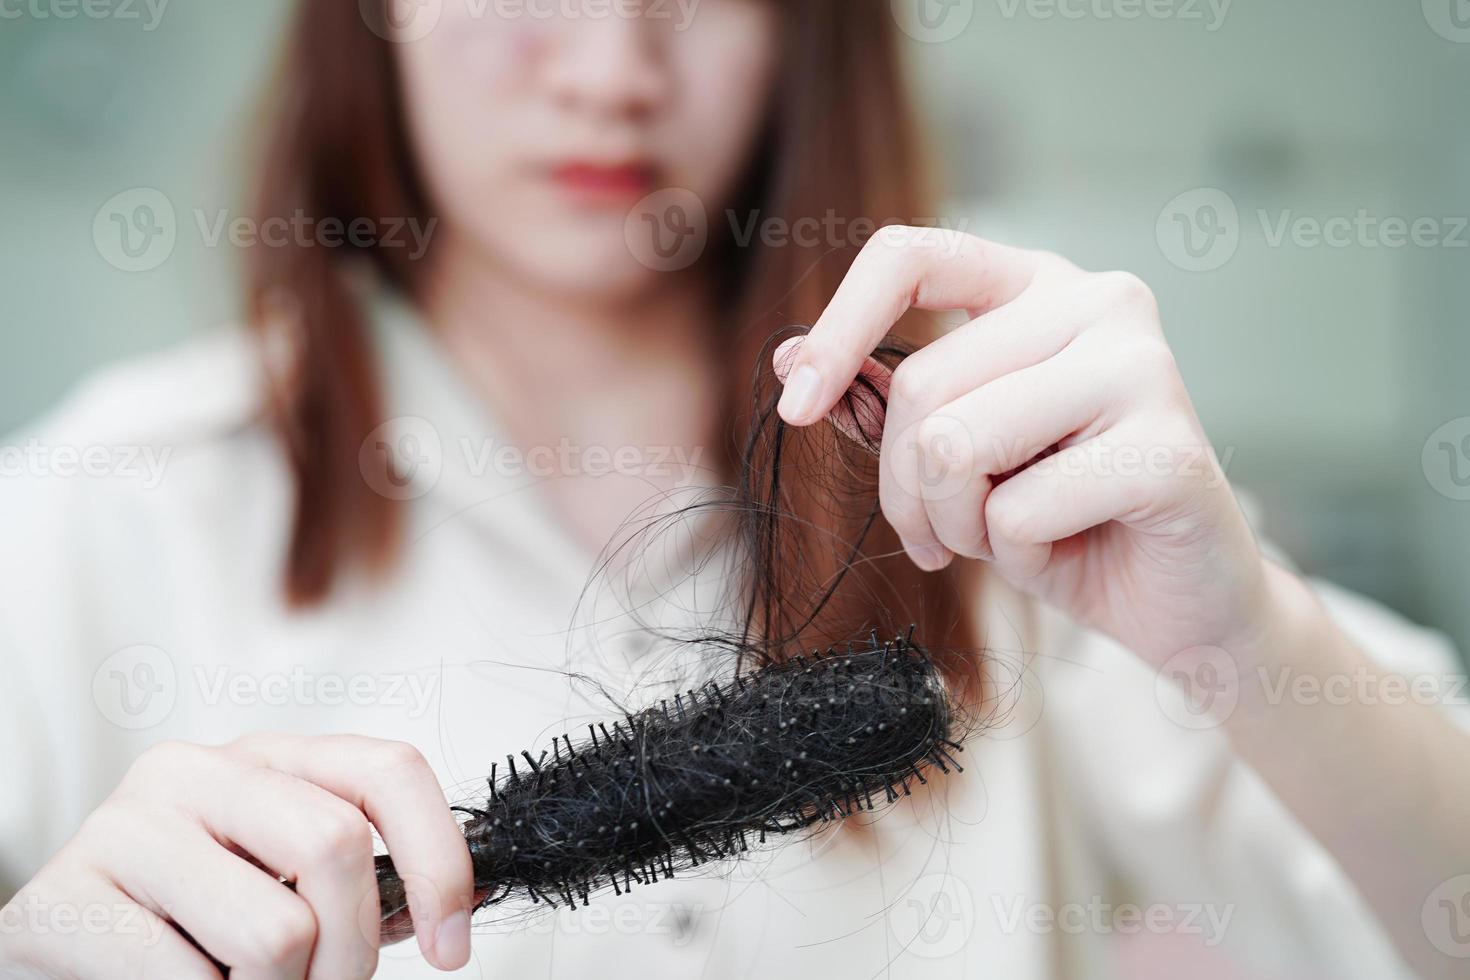 las mujeres asiáticas tienen problemas con la pérdida de cabello largo y se adhieren al cepillo de peine. foto